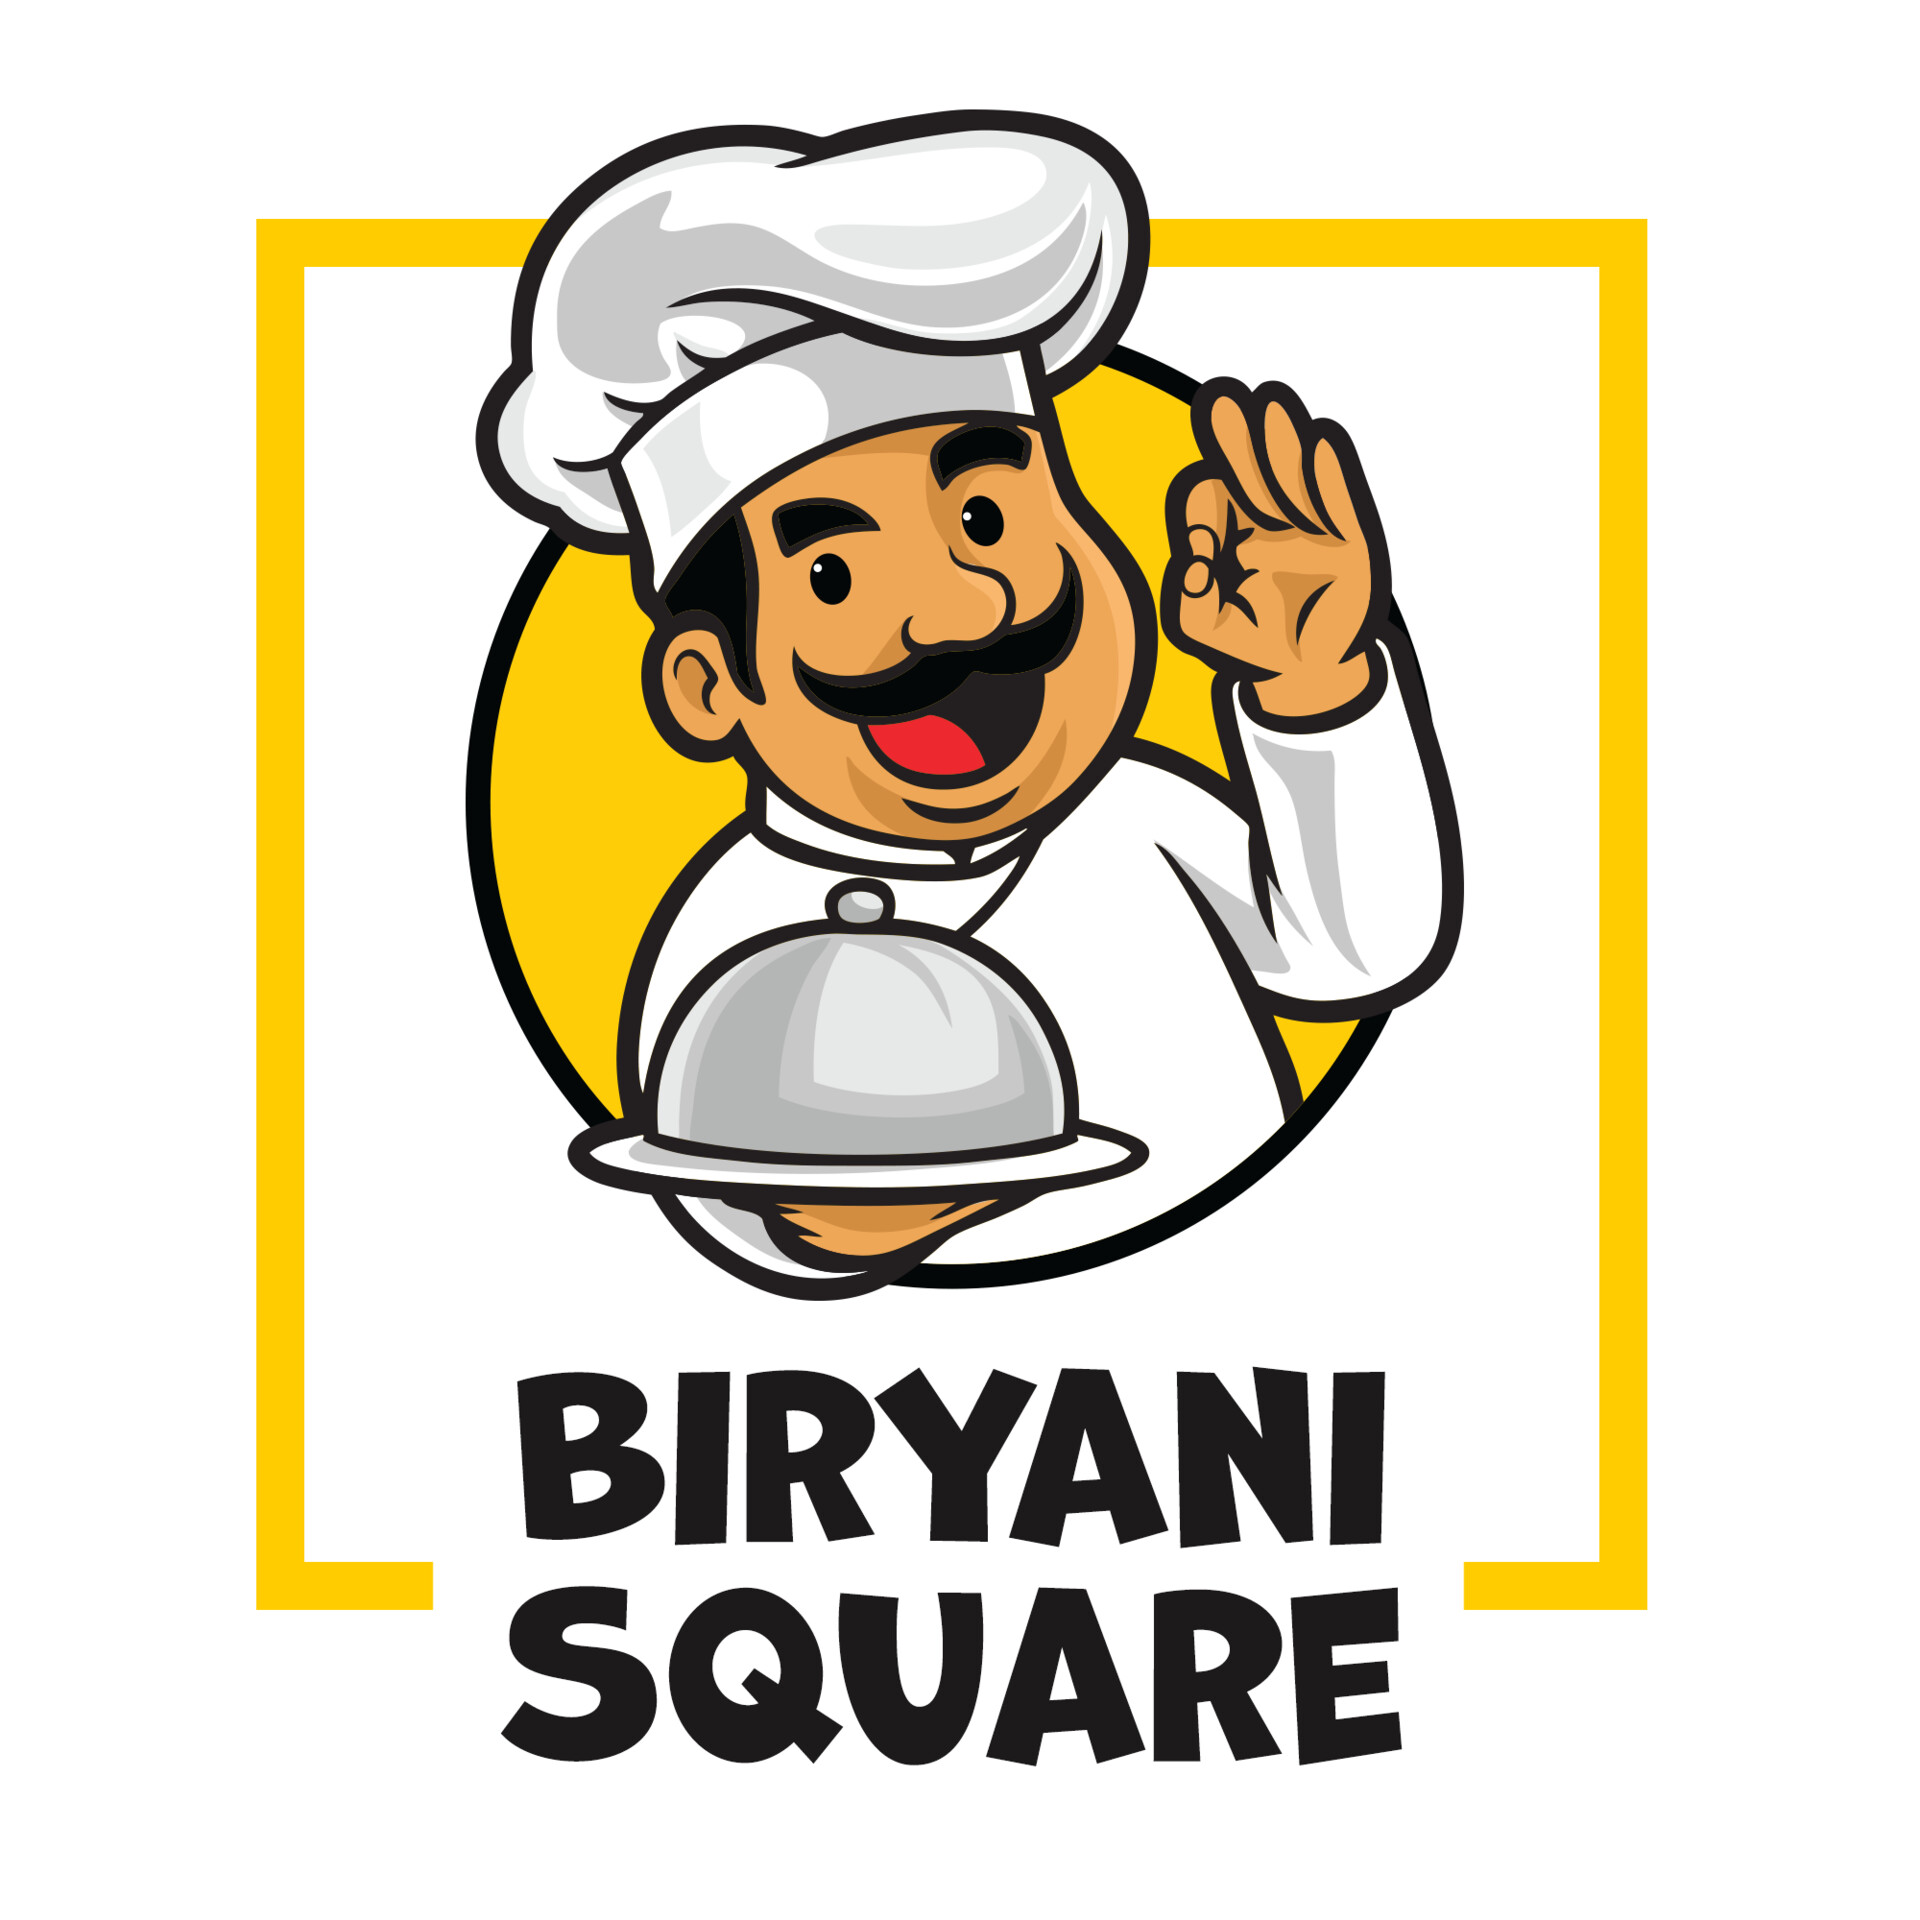 Ek Biryani Katha in sri nagar colony,Hyderabad - Best Biryani Restaurants  in Hyderabad - Justdial